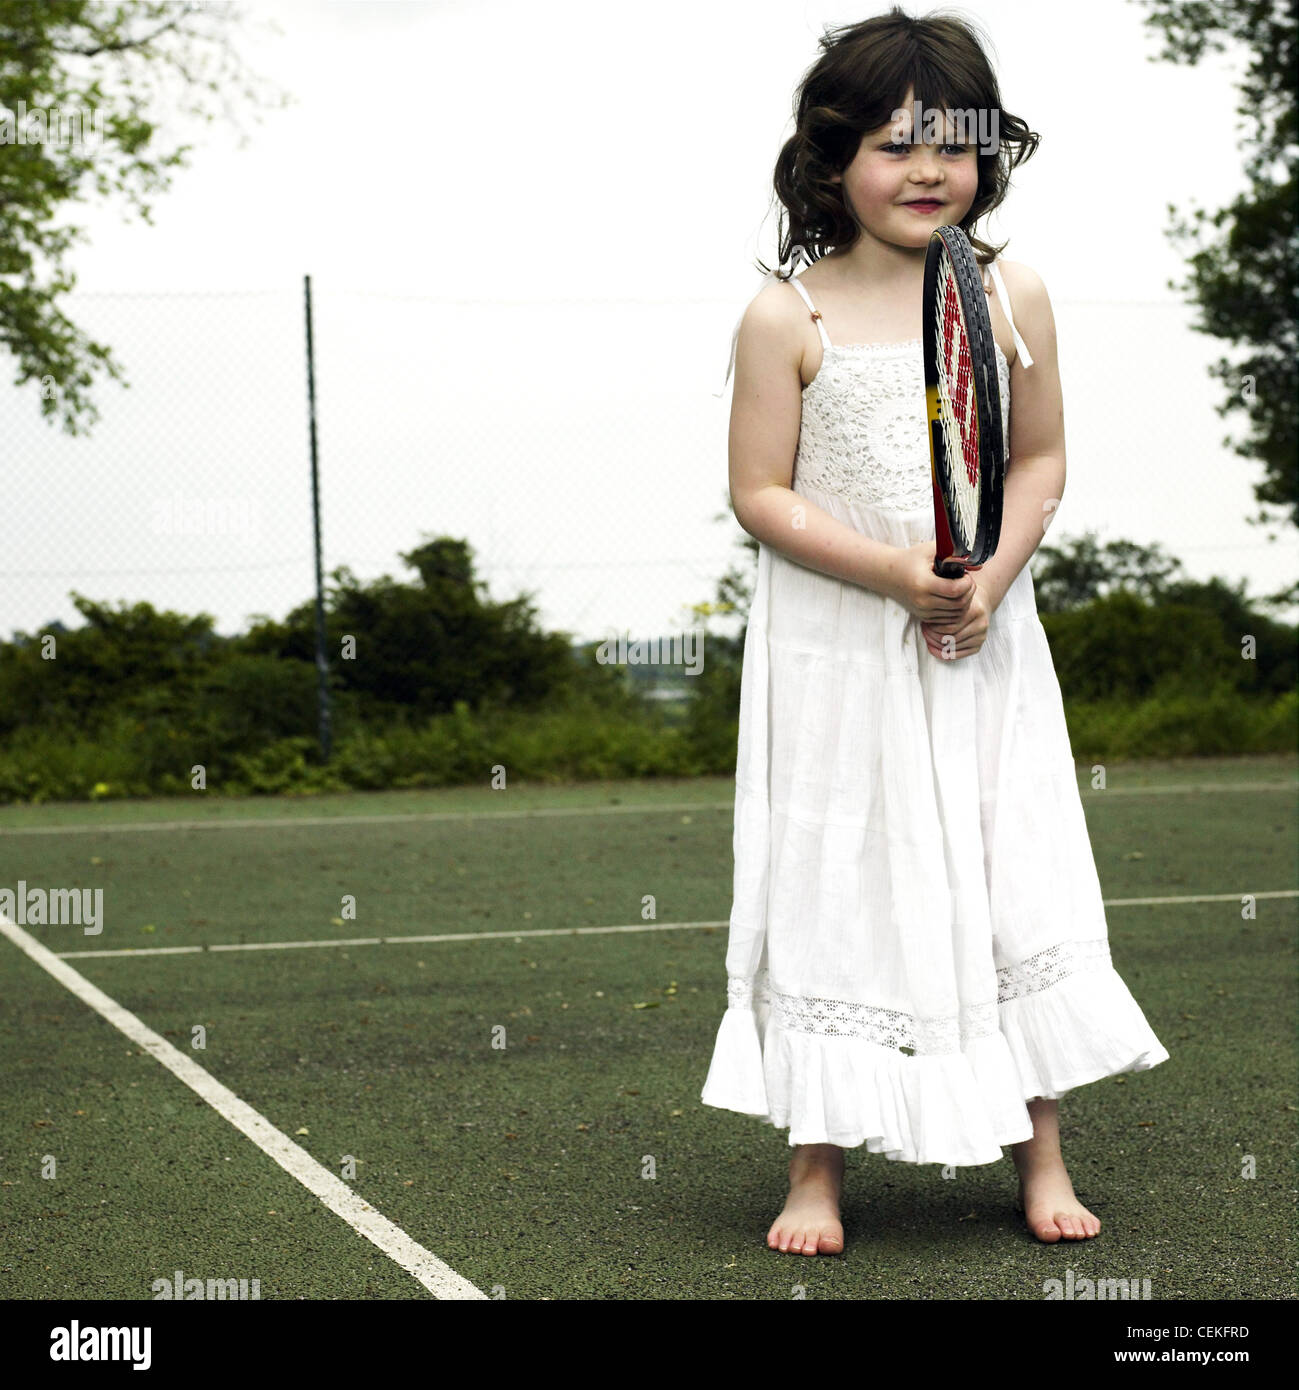 Femme longue robe blanche enfant portant sur l'article de tennis raquette  de tennis holding Photo Stock - Alamy